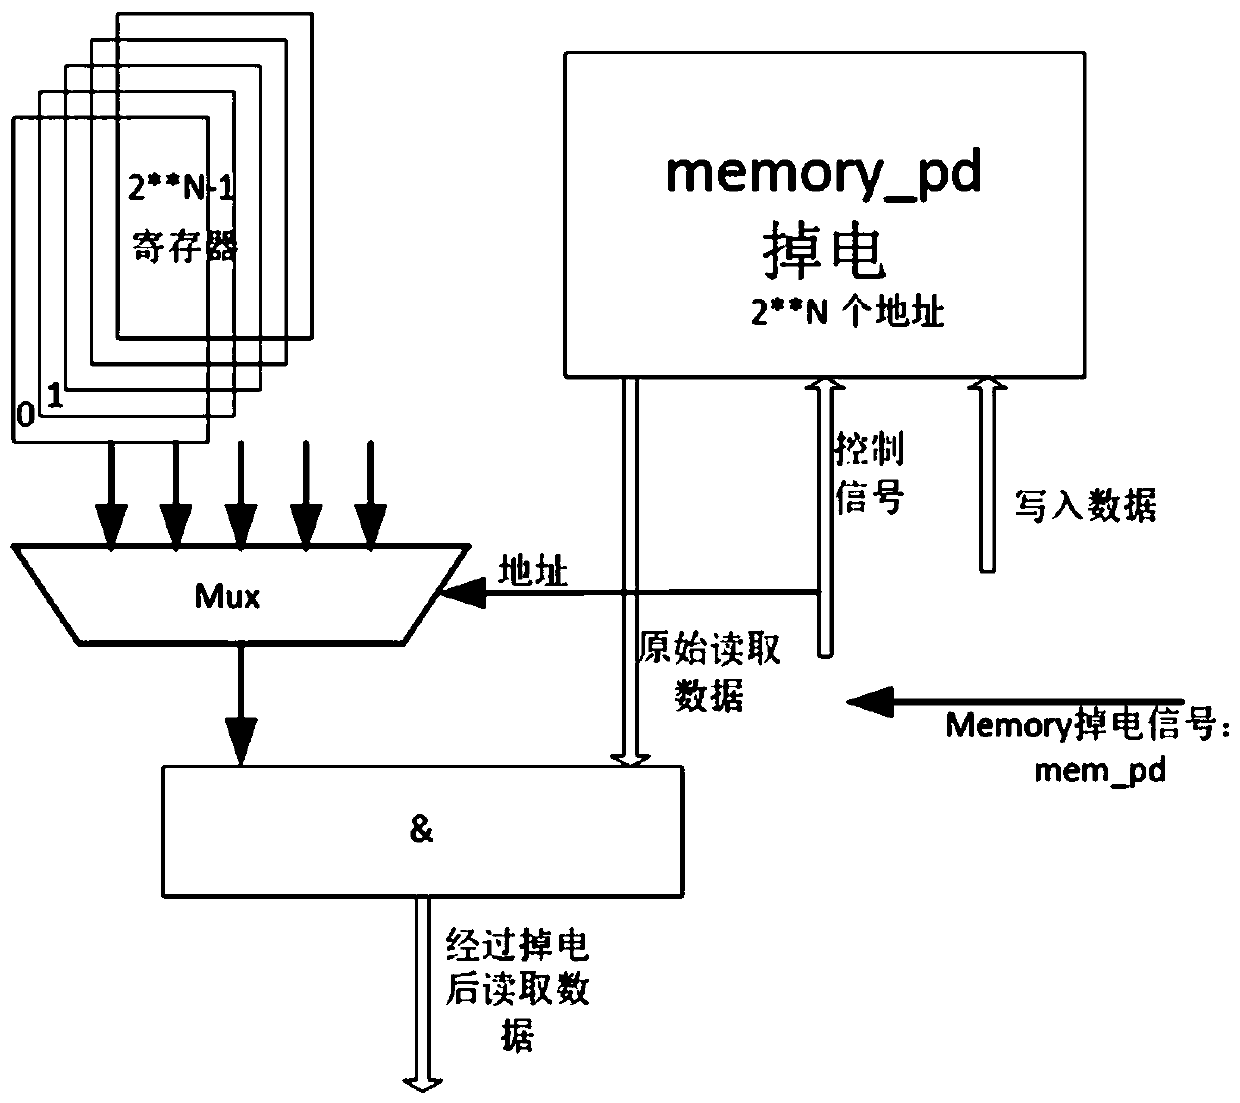 Method for simulating power failure of memory in FPGA